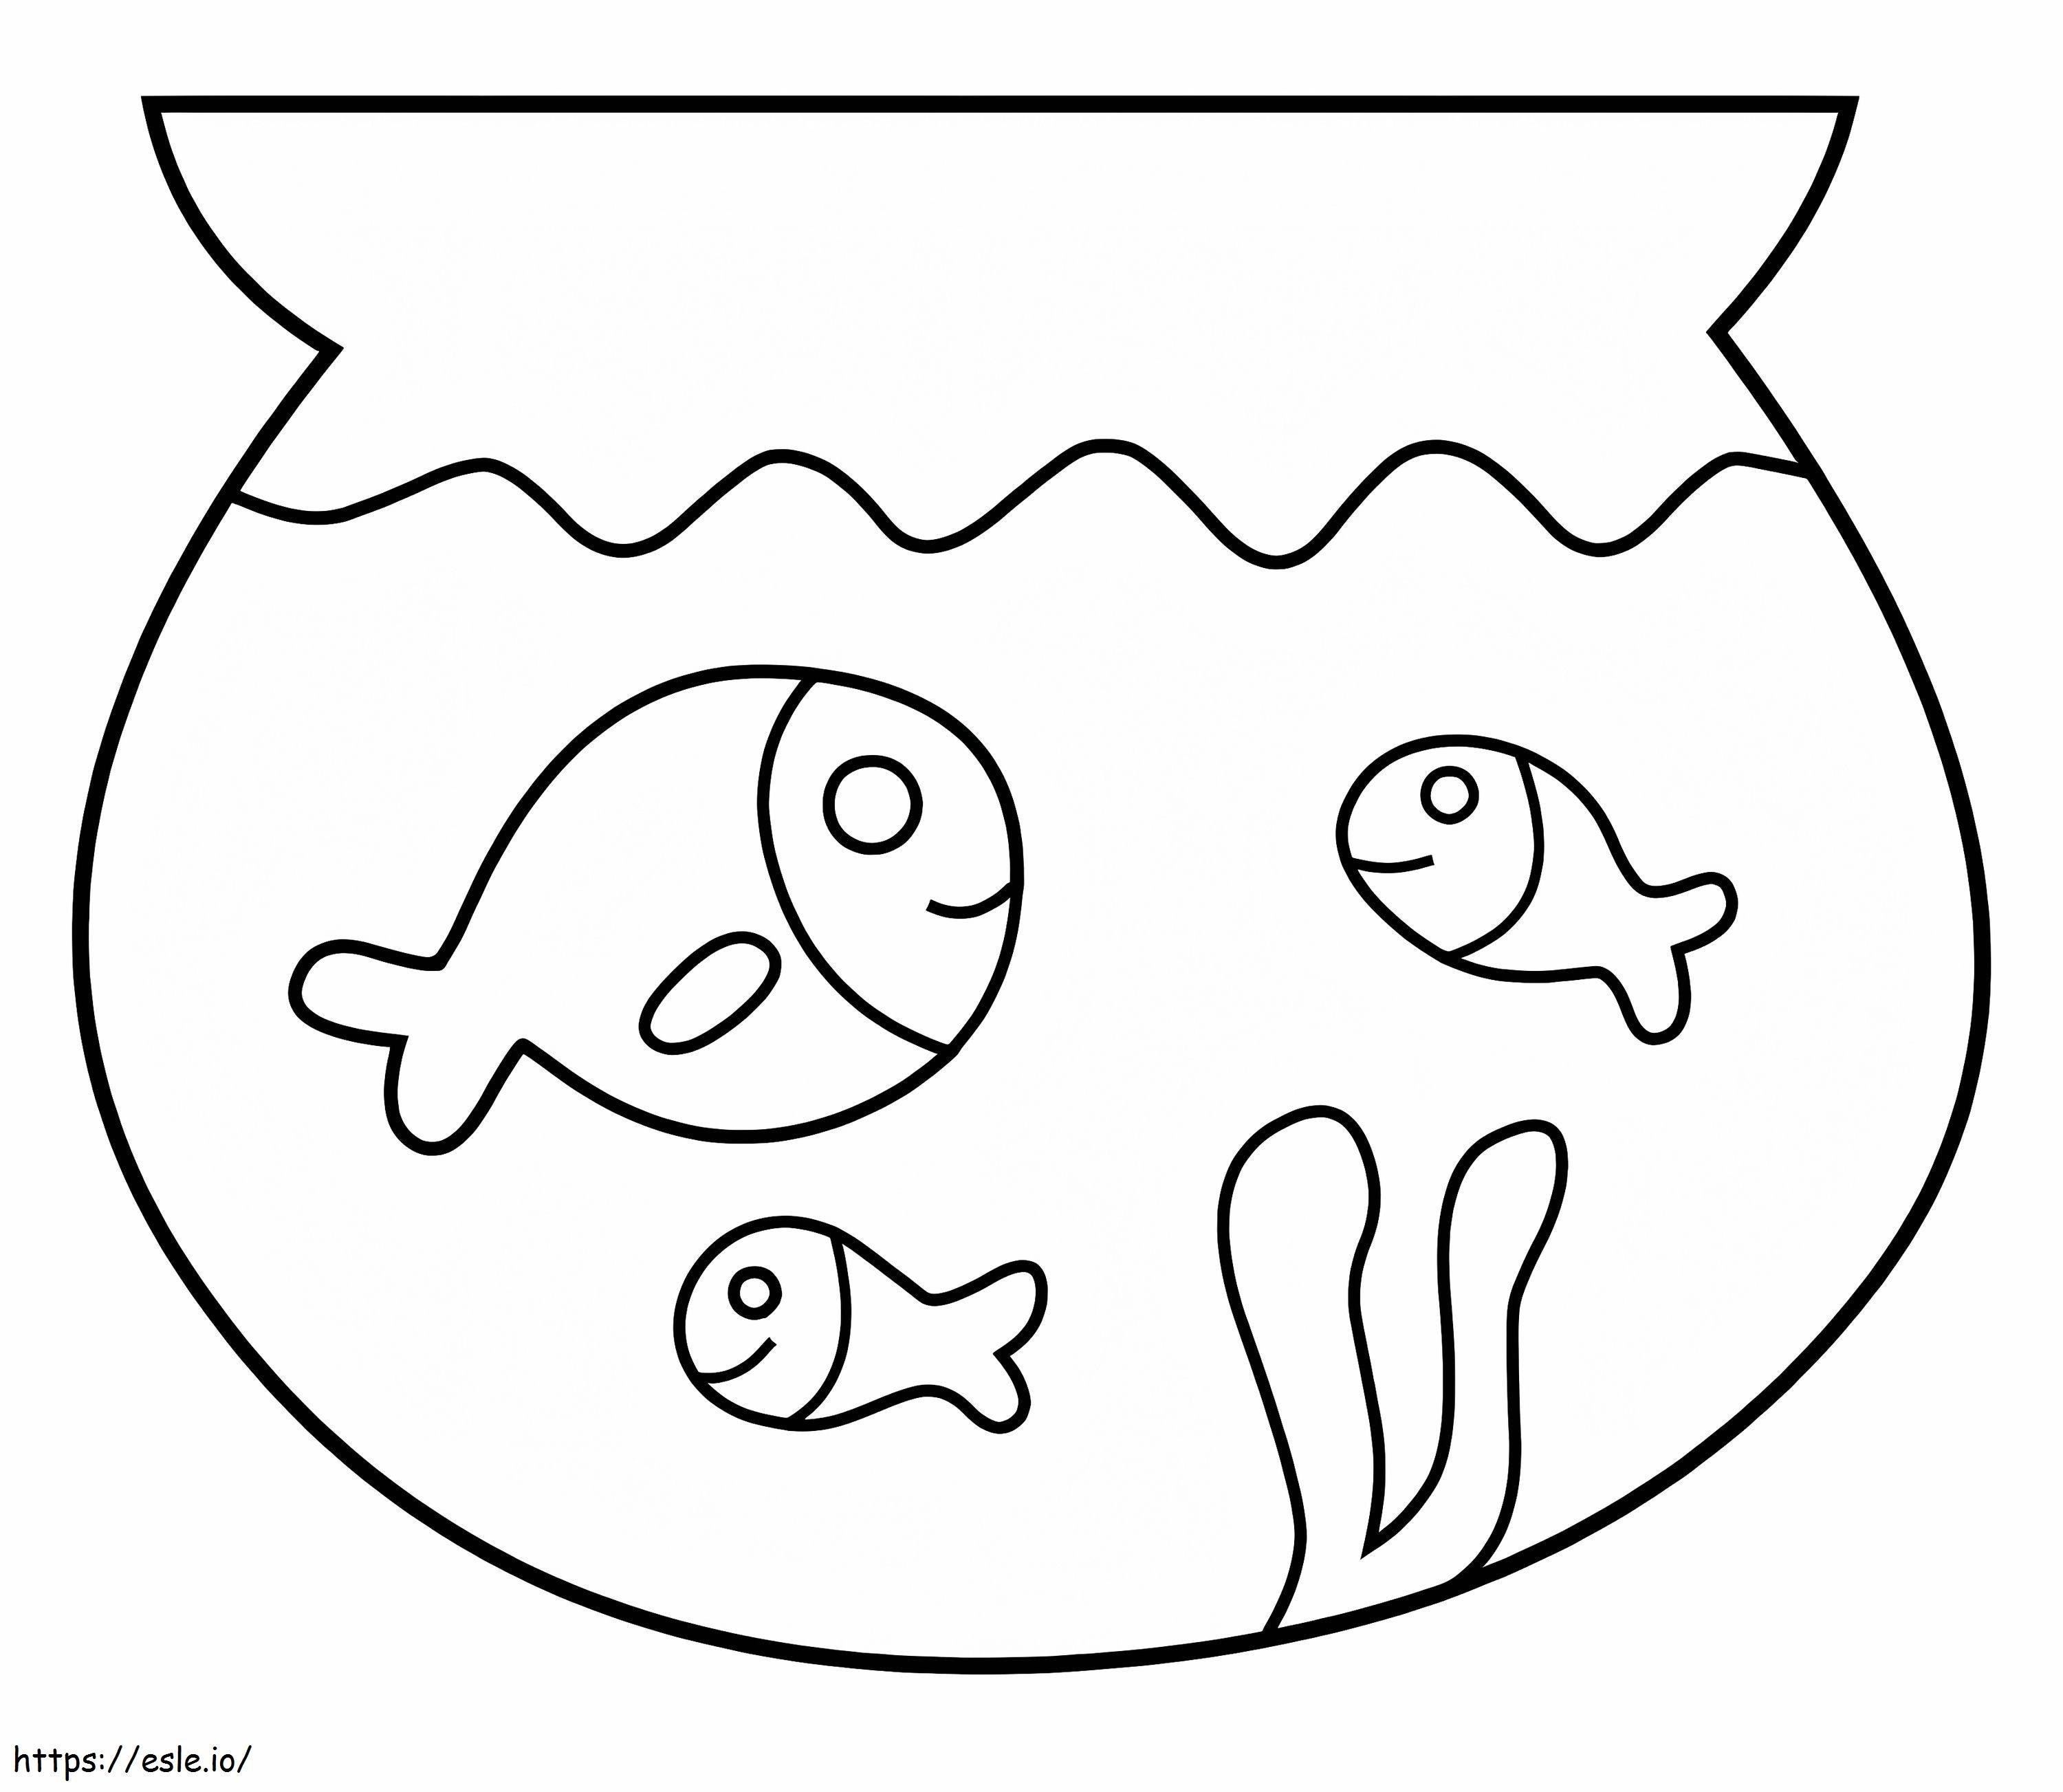 Coloriage Trois poissons faciles dans l'aquarium à imprimer dessin